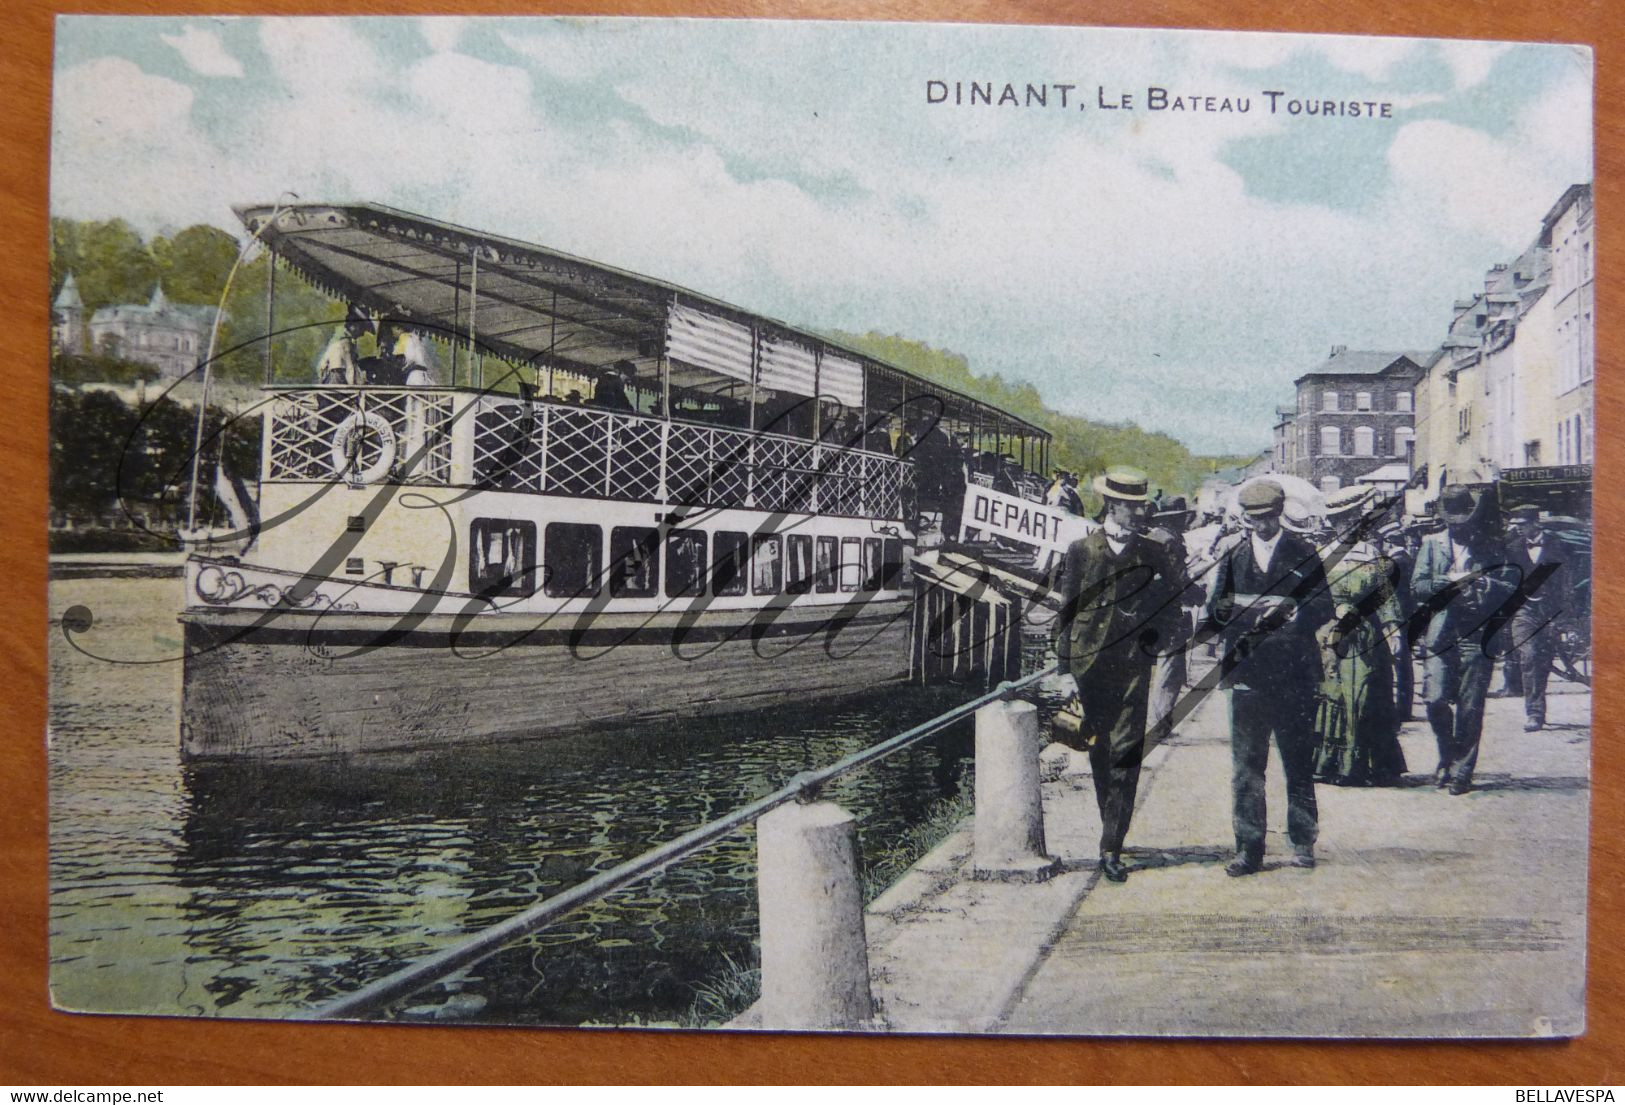 Dinant Bateau Touriste  Depart. Colorée - Dinant